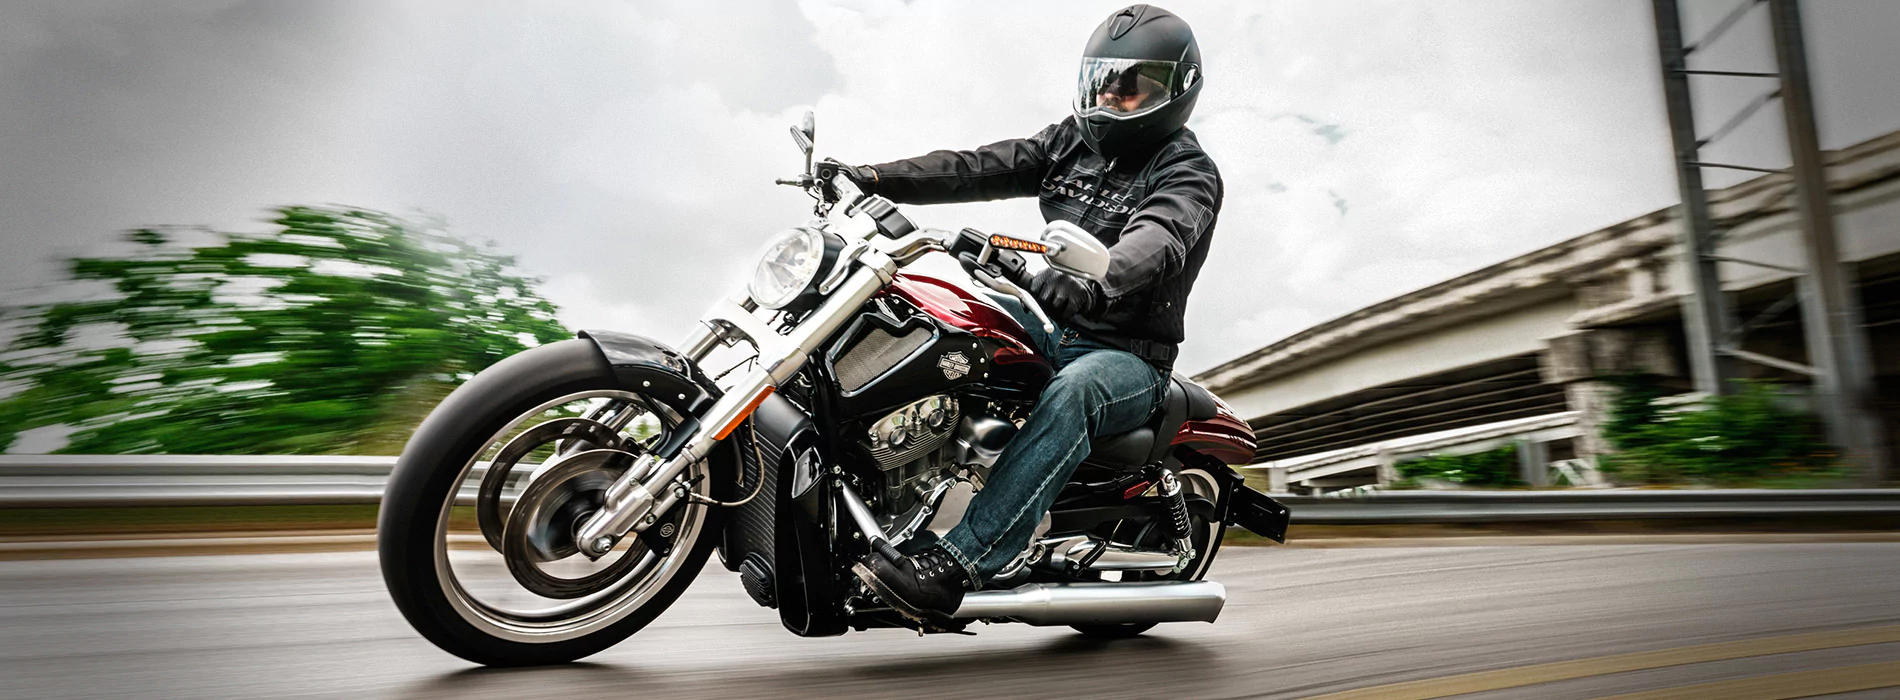 Harley-Davidson відкликає 57 тисяч мотоциклів по всьому світу